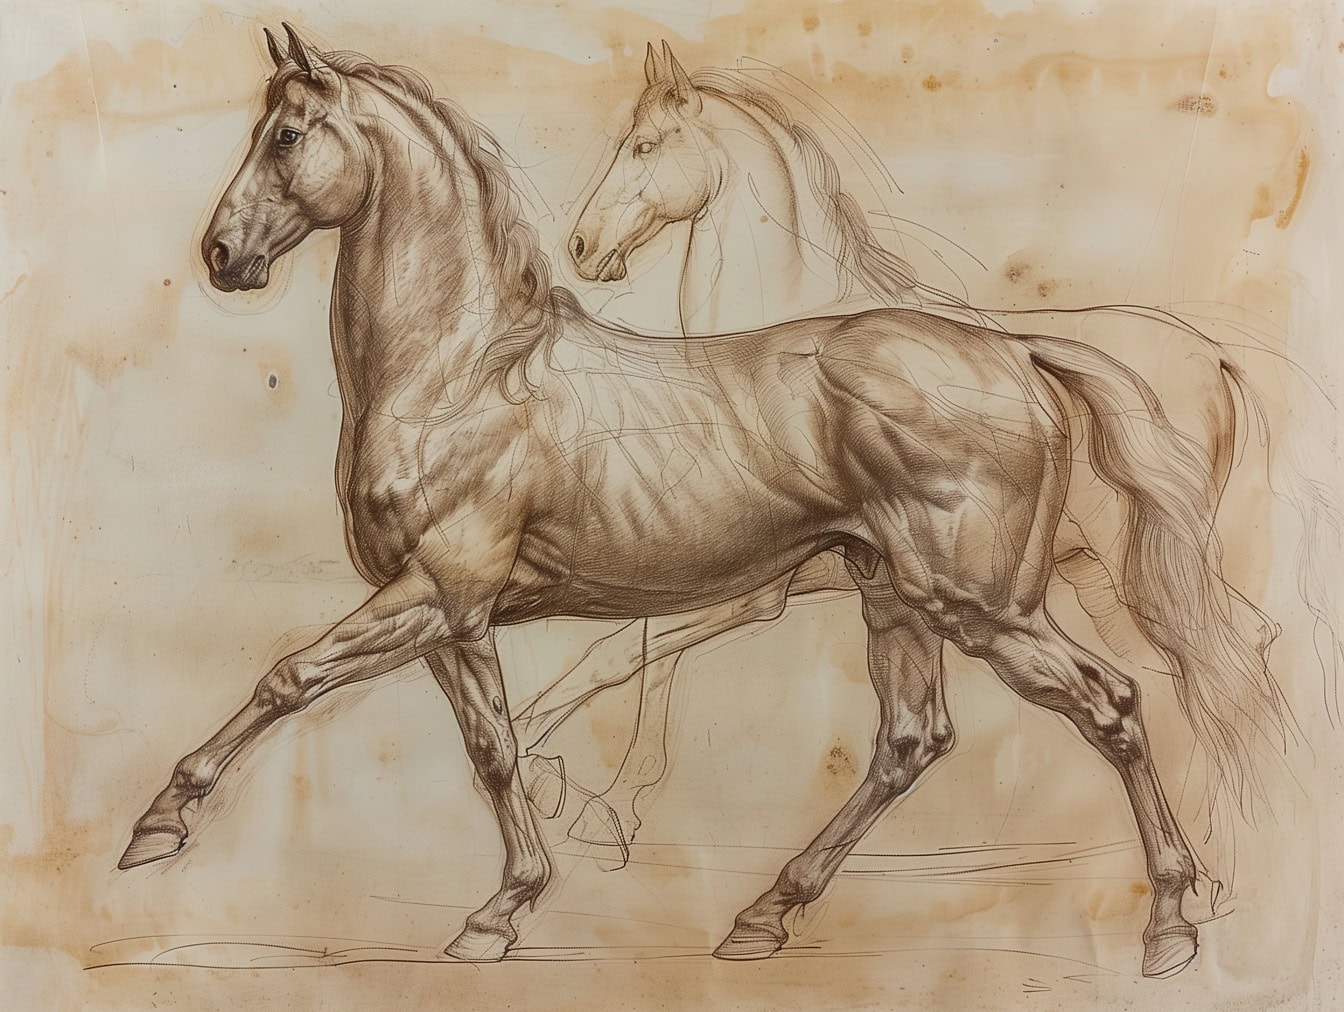 Tegning af to heste på gammelt papir, hingst foran er færdig, mens hest i baggrunden stadig er en arbejdsskitse